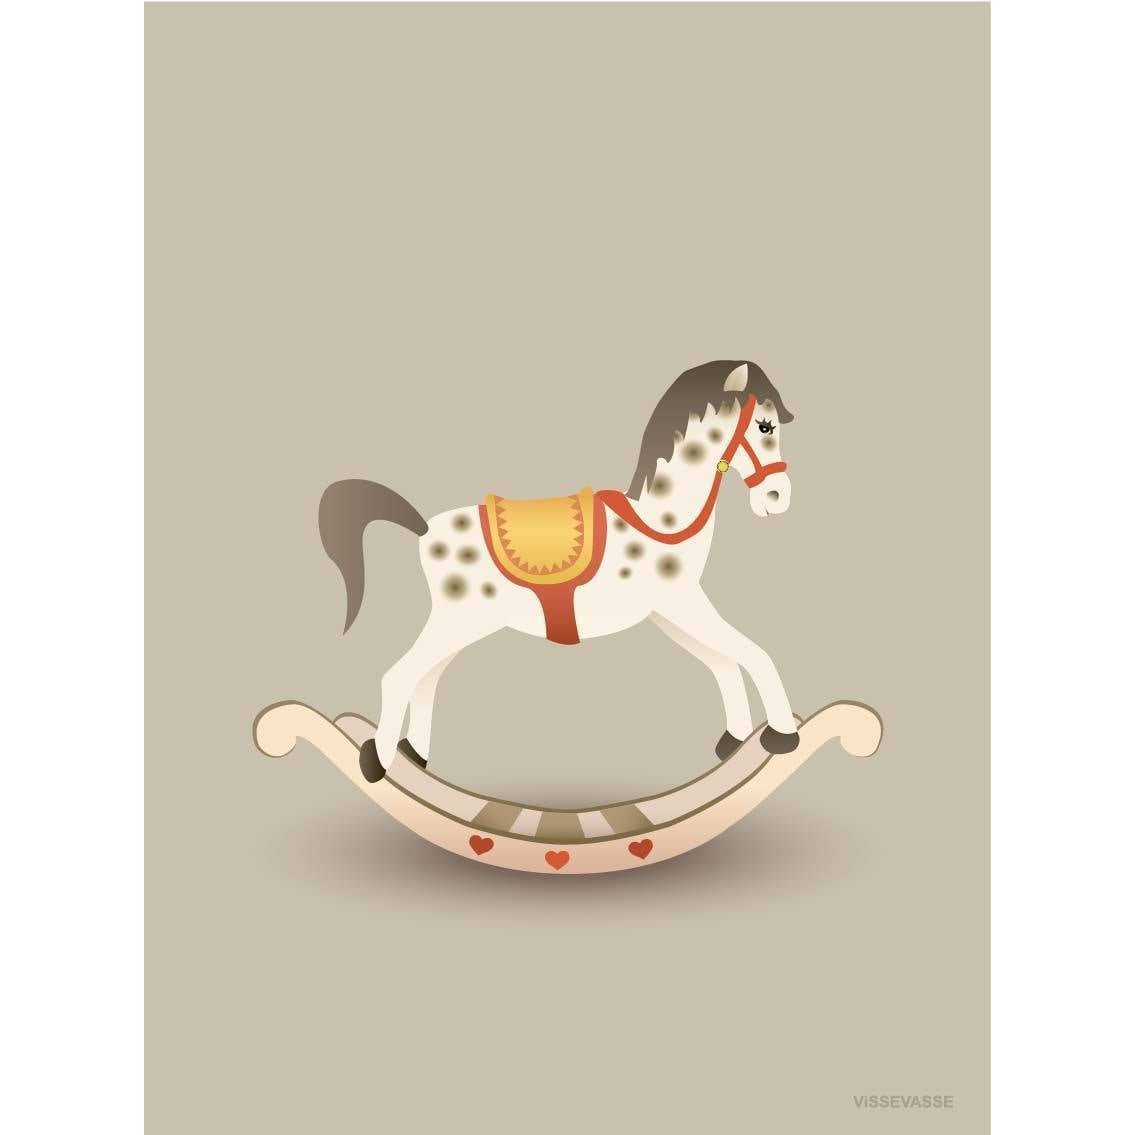 Vissevase houpací koně plakát 15 x21 cm, písečná hnědá